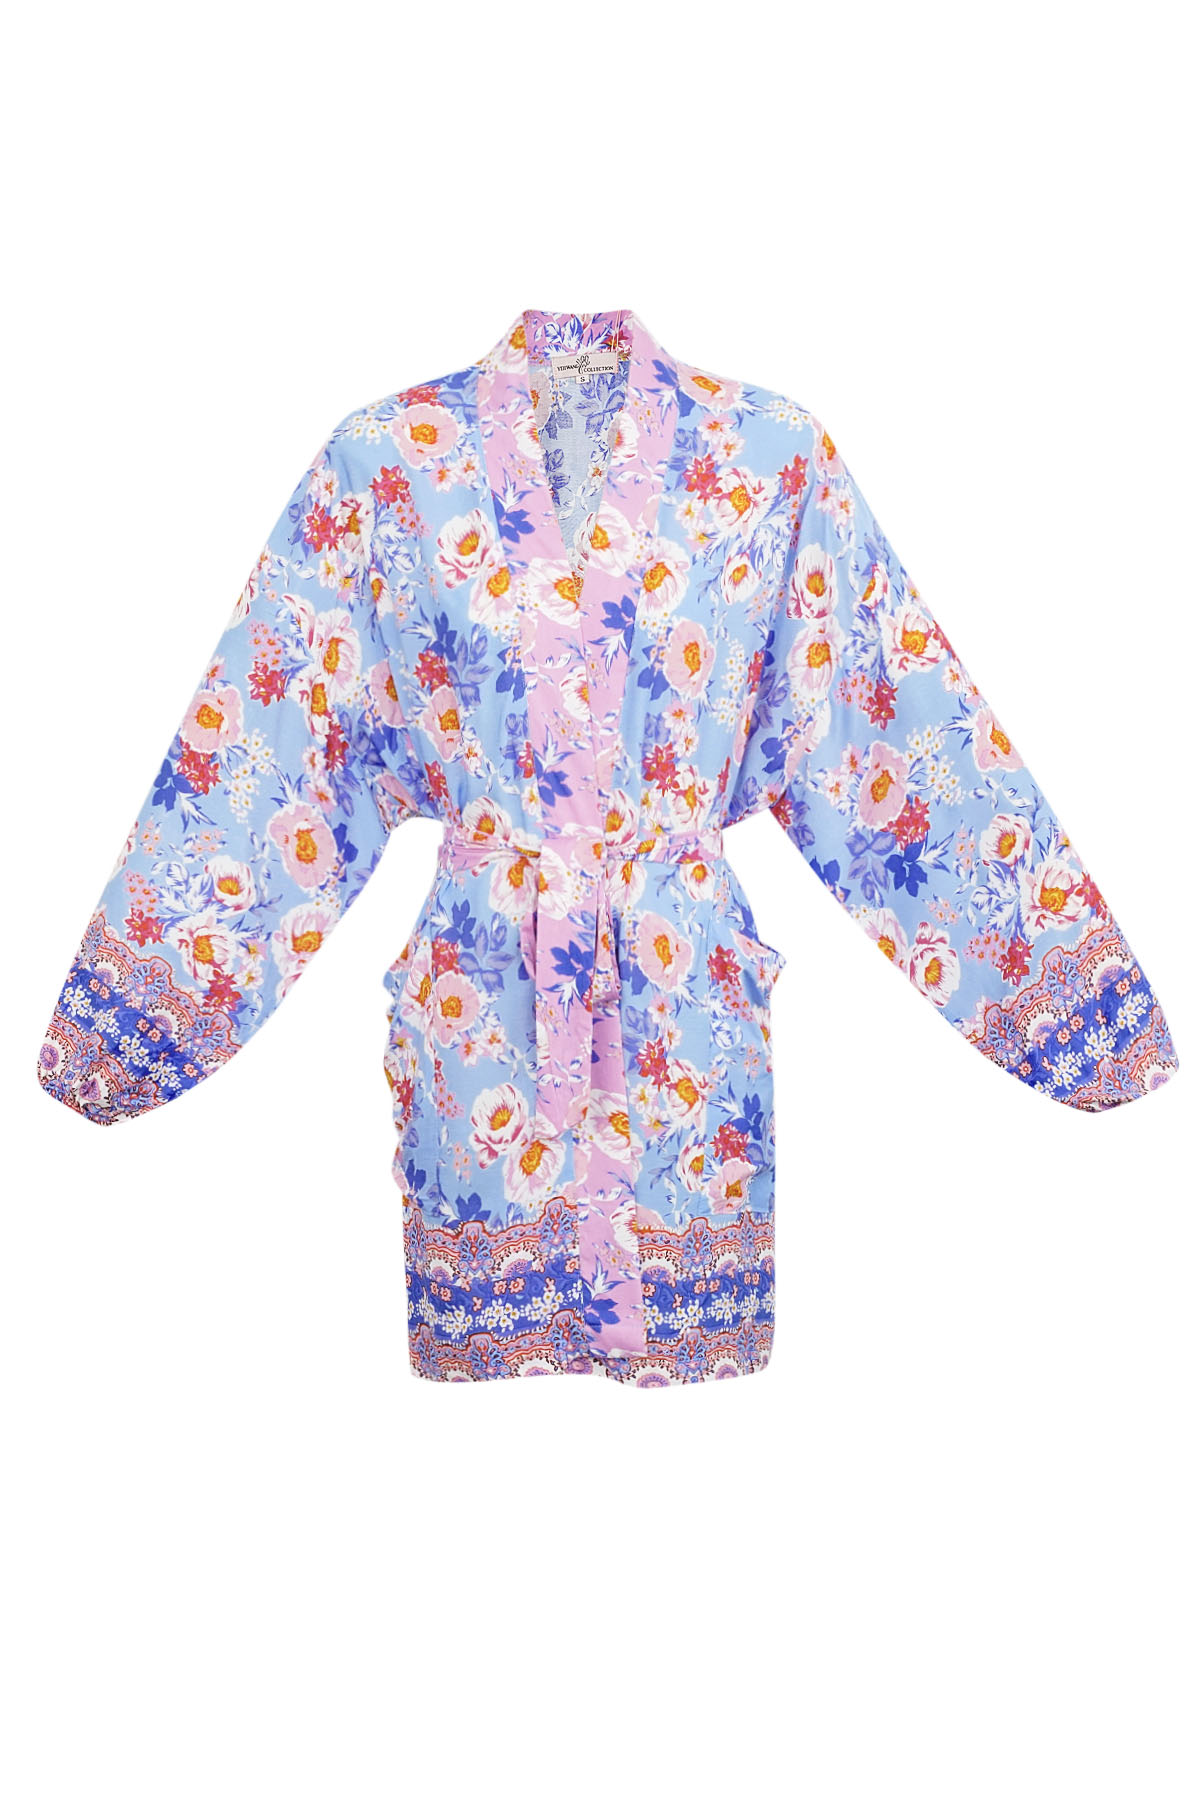 Kimono corto flores moradas - multi h5 